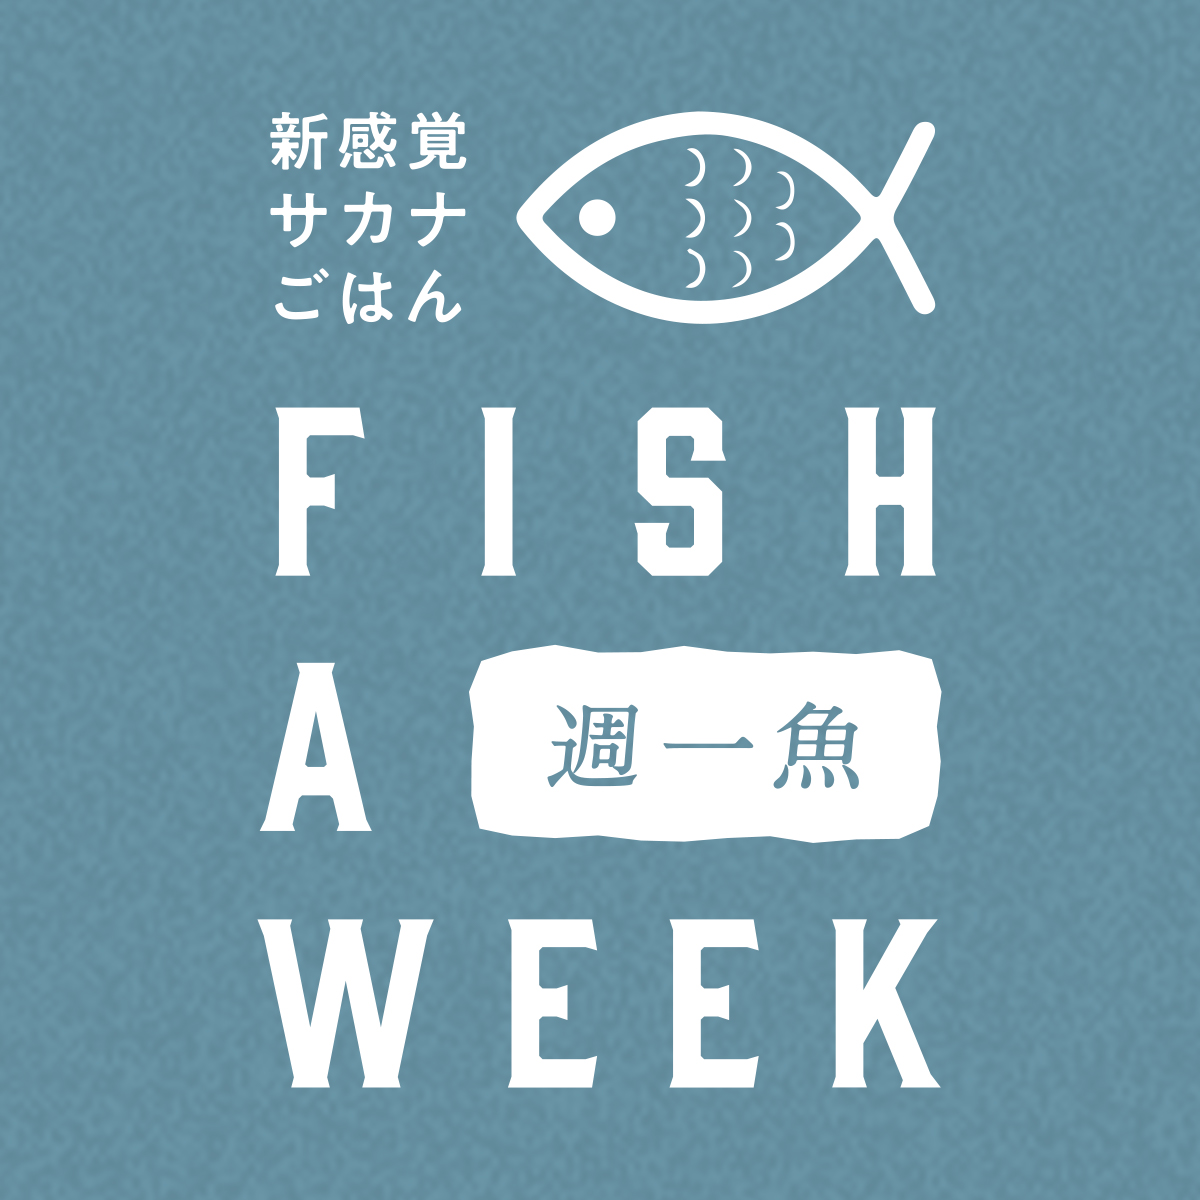 FISH A WEEK 週一魚